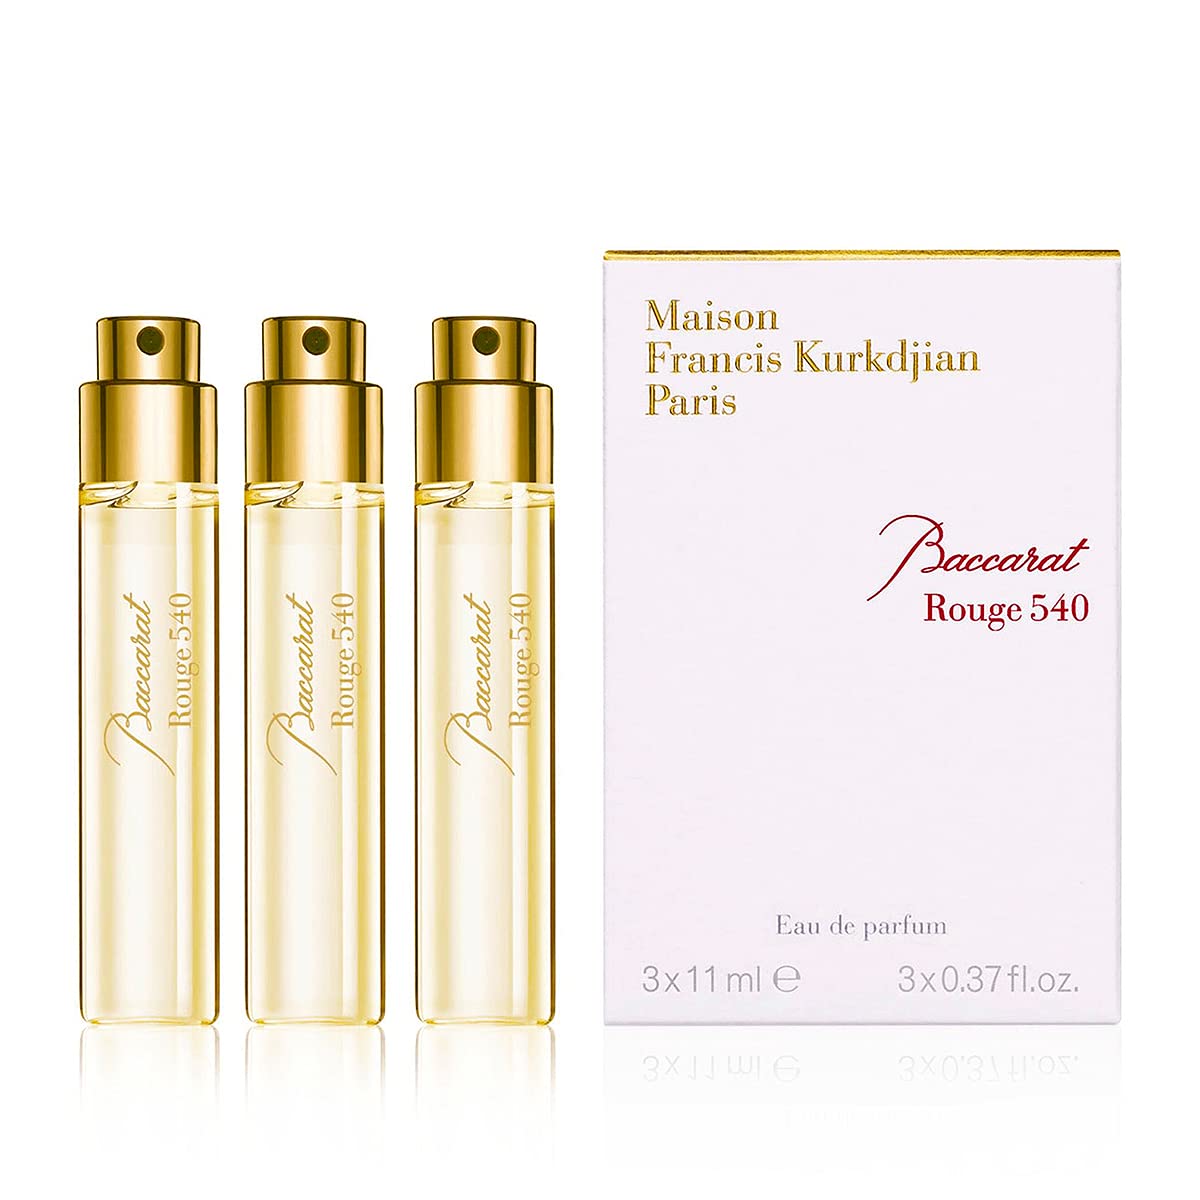 Maison Francis Kurkdjian Baccarat Rouge 540 Eau de Parfum Travel Set